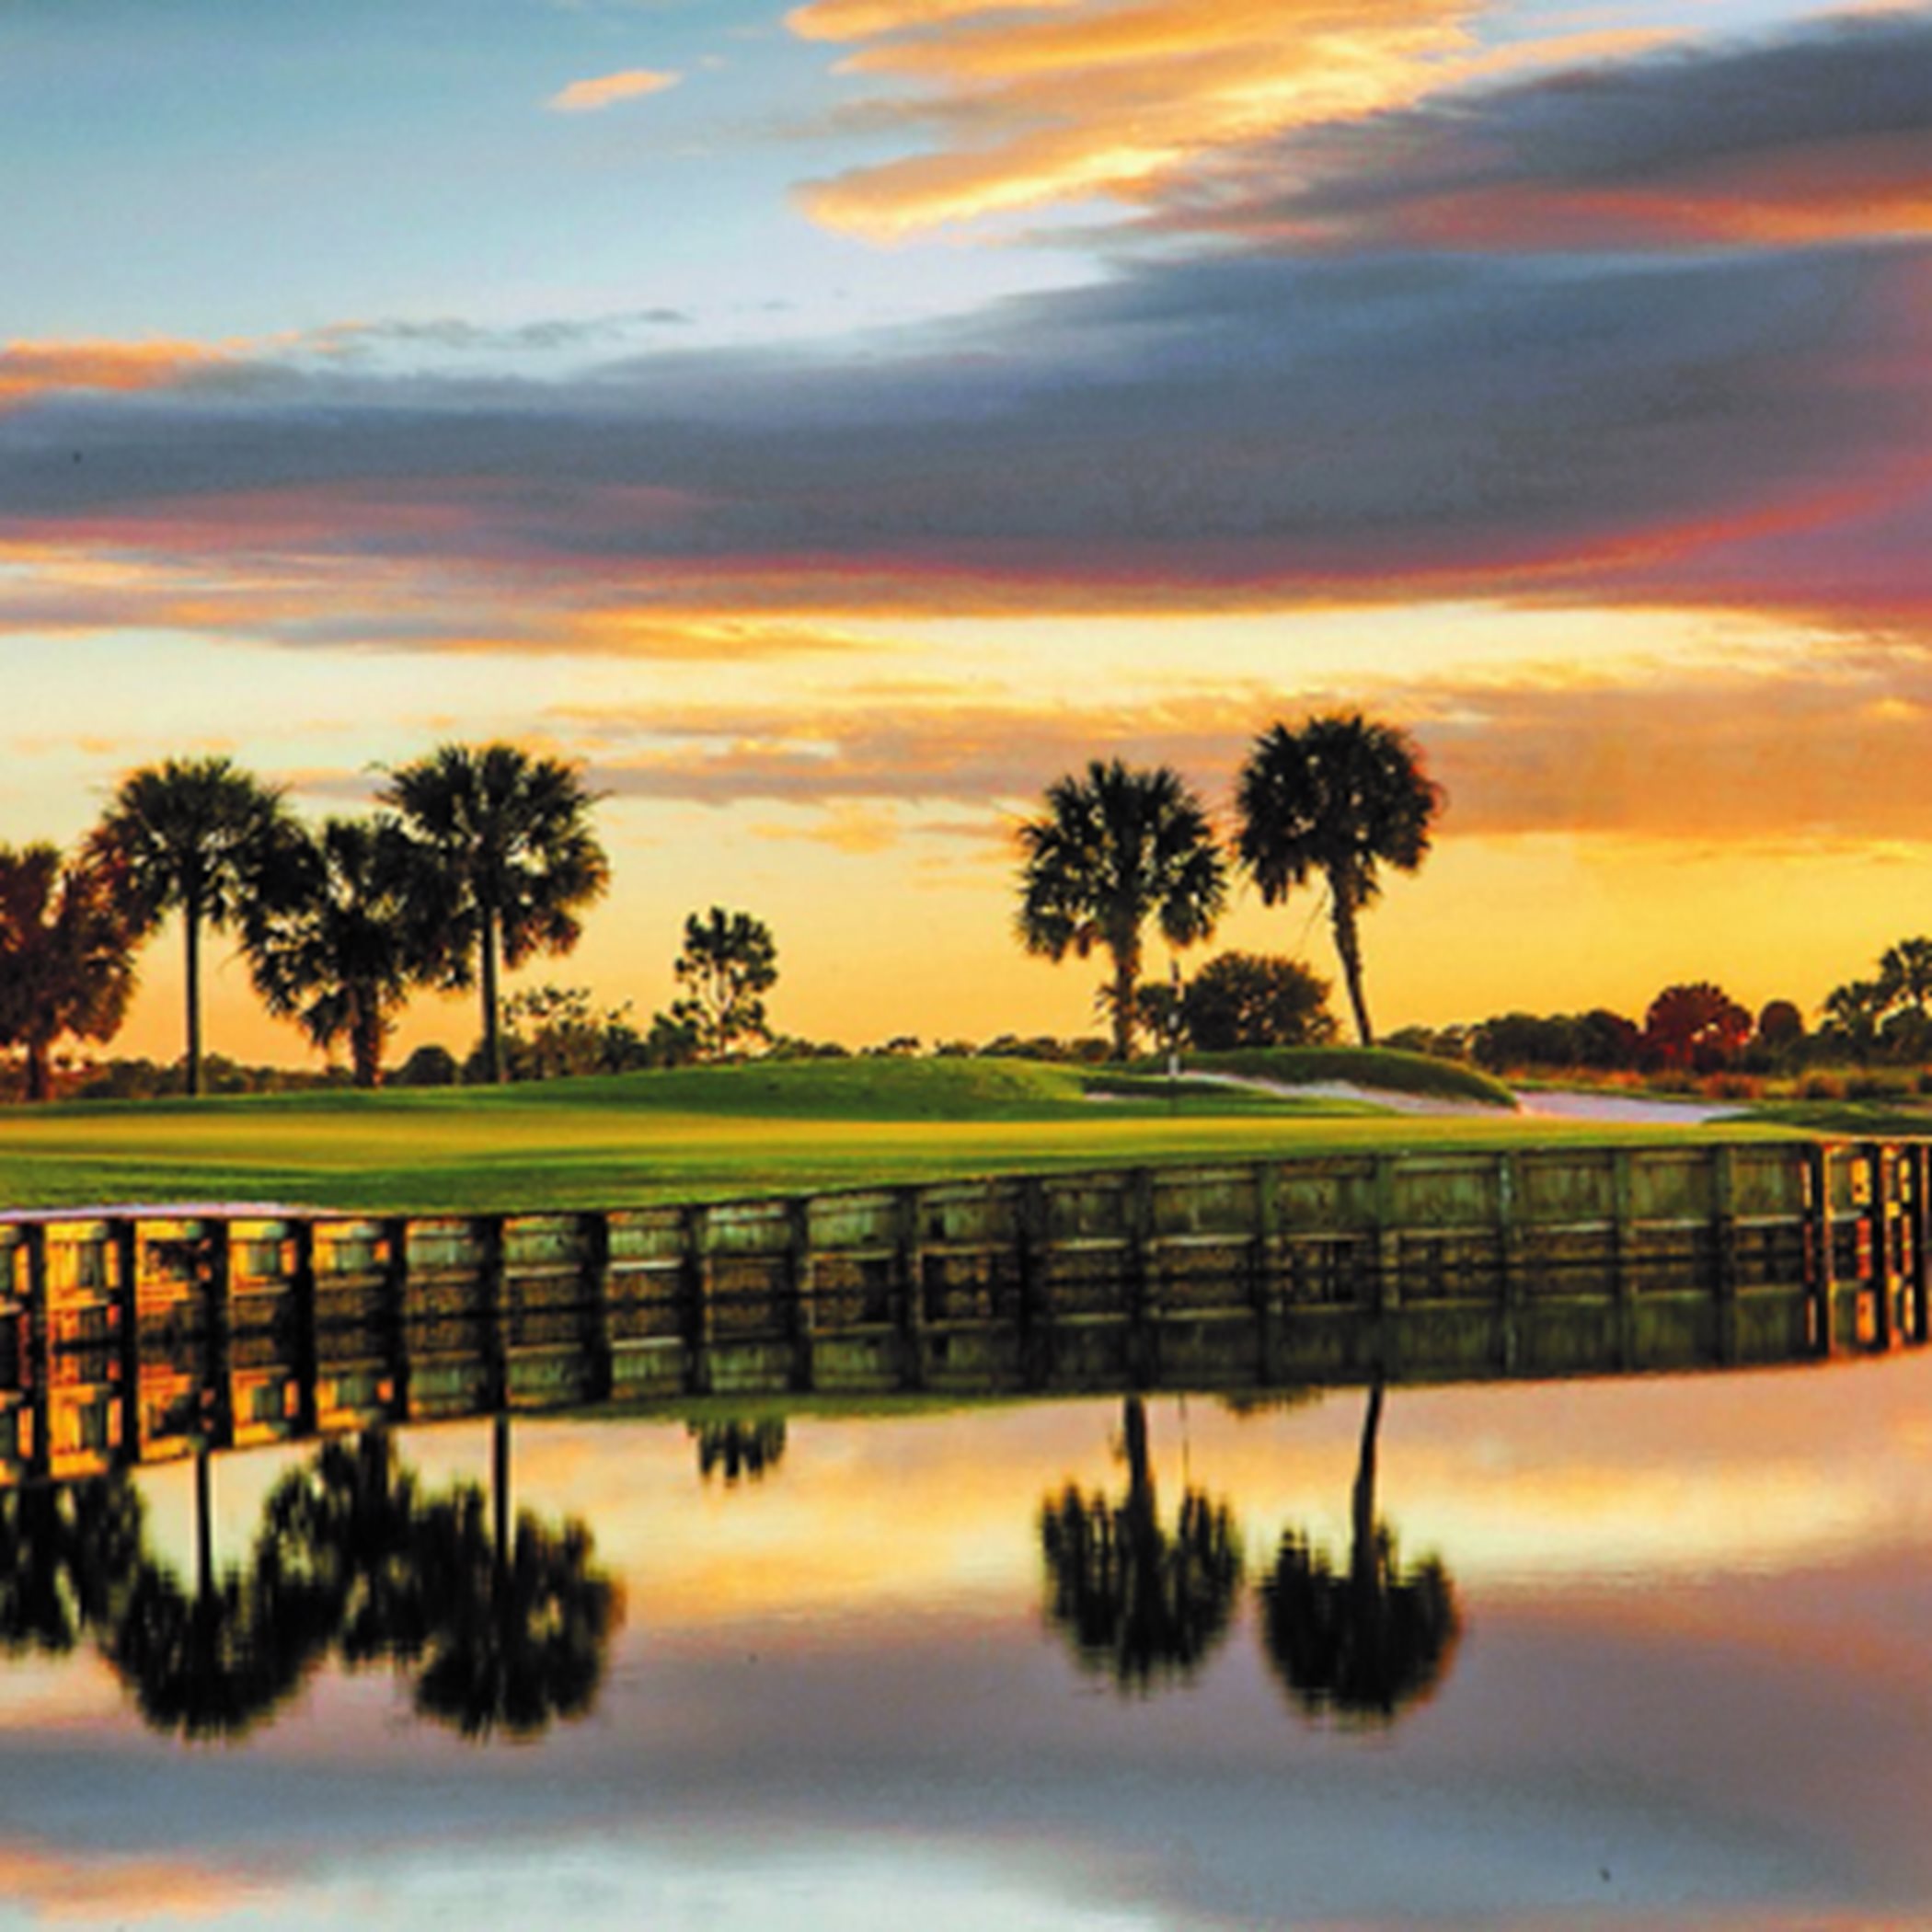 Sarasota National Golf Course